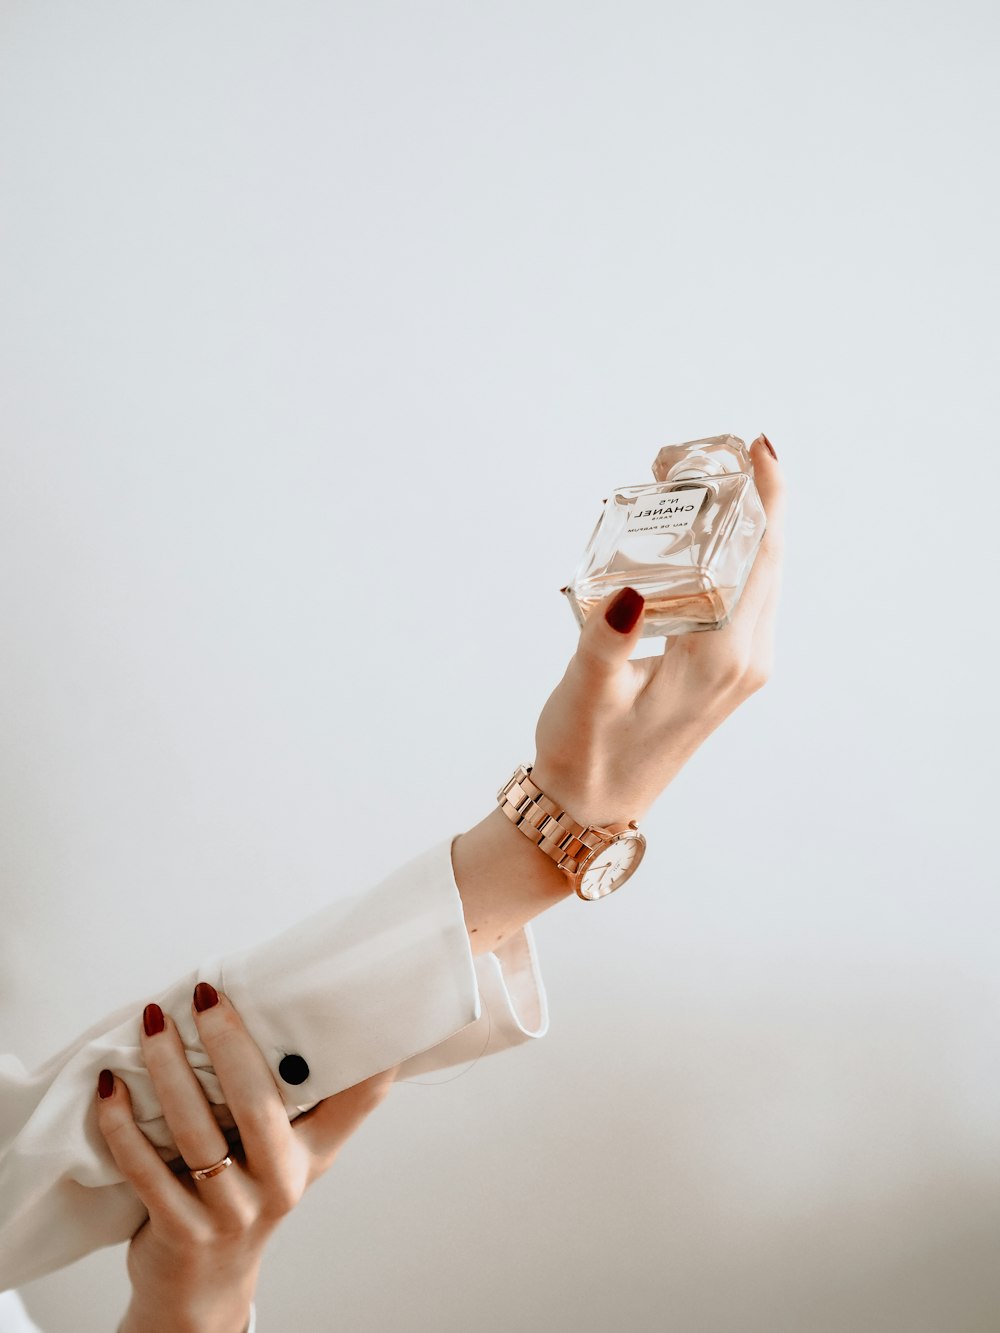 Persona en vestido blanco sosteniendo una botella de vidrio transparente